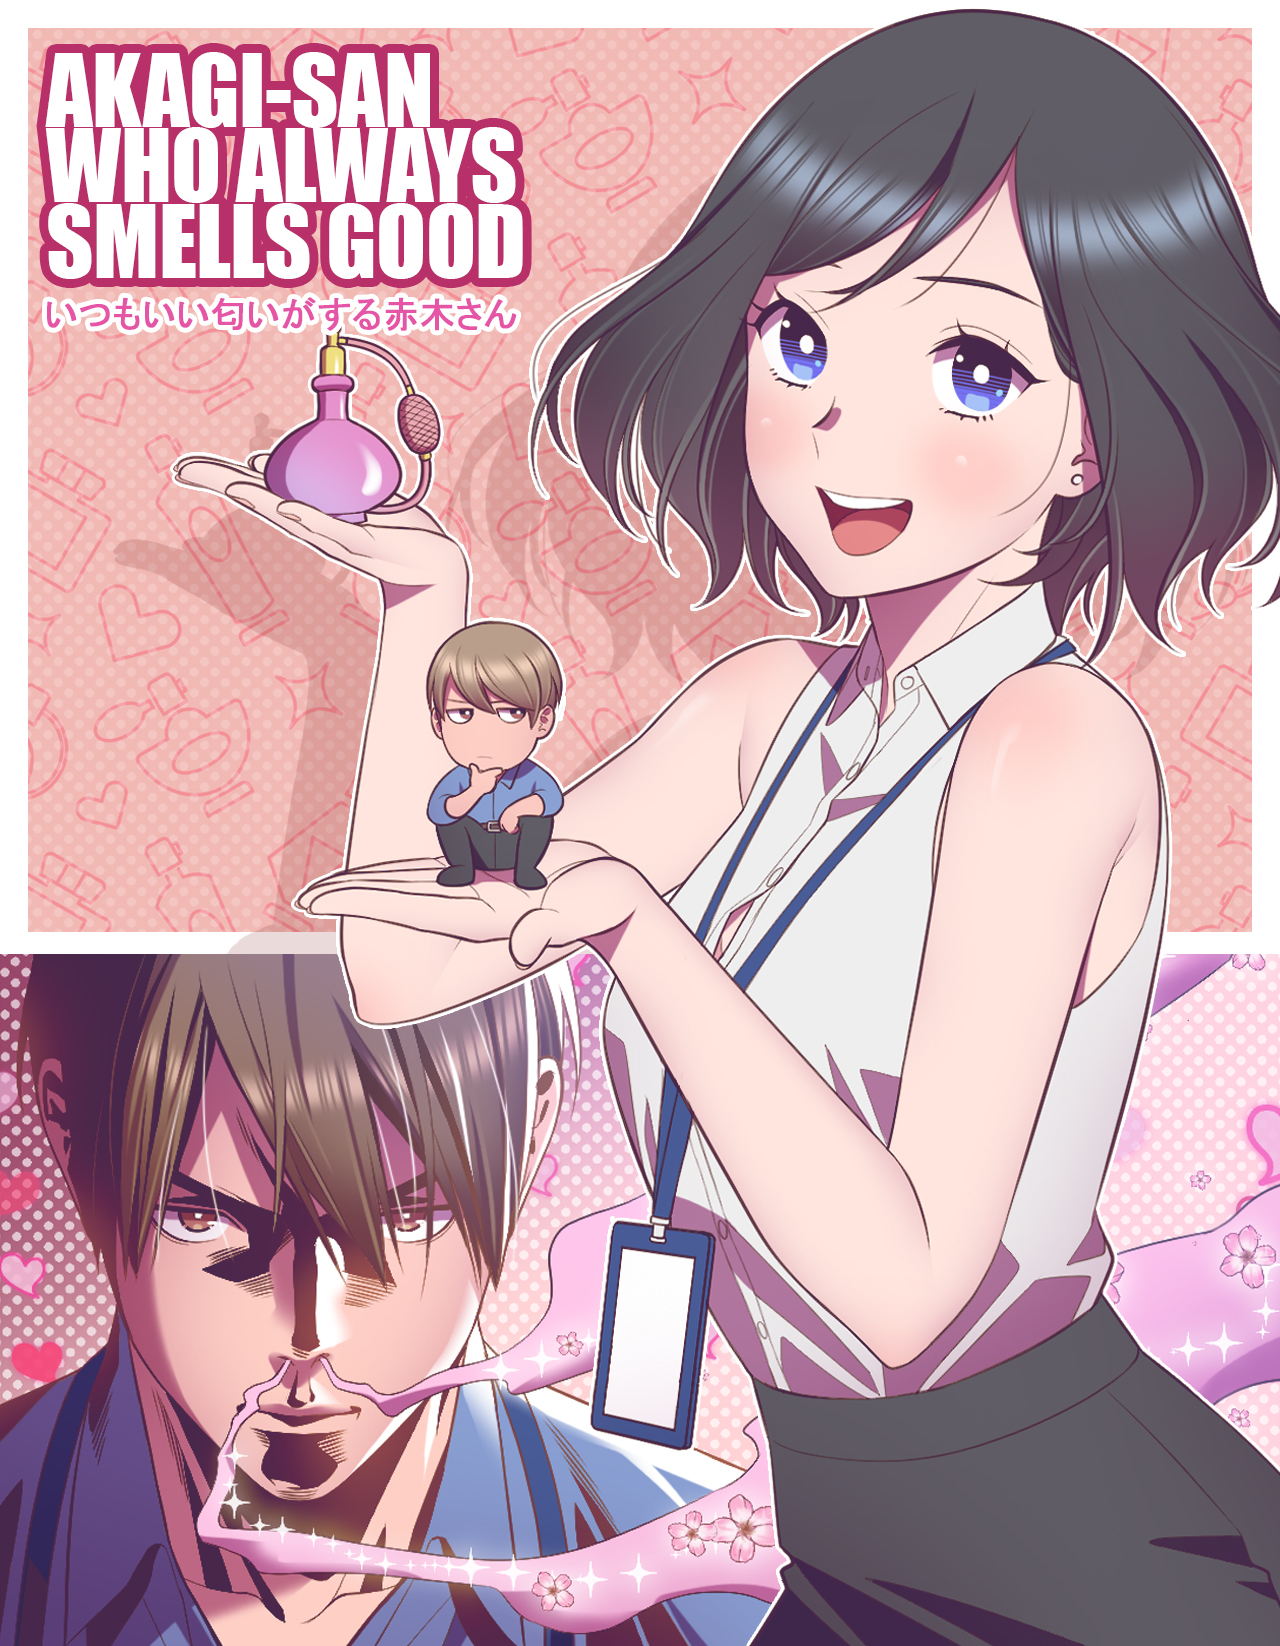 Akagi-san who always smells good